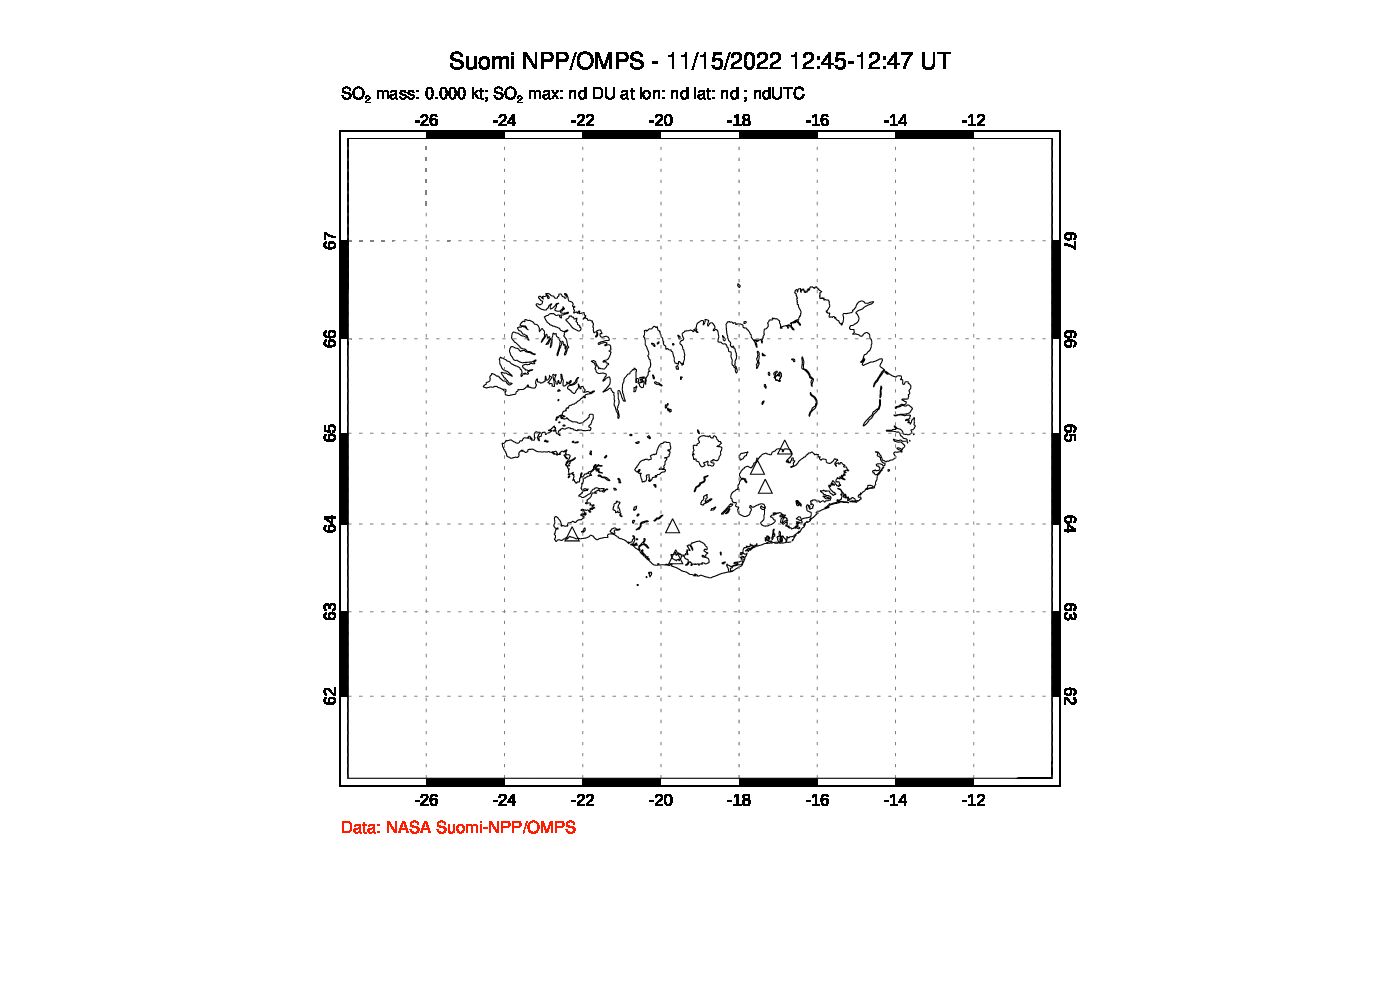 A sulfur dioxide image over Iceland on Nov 15, 2022.